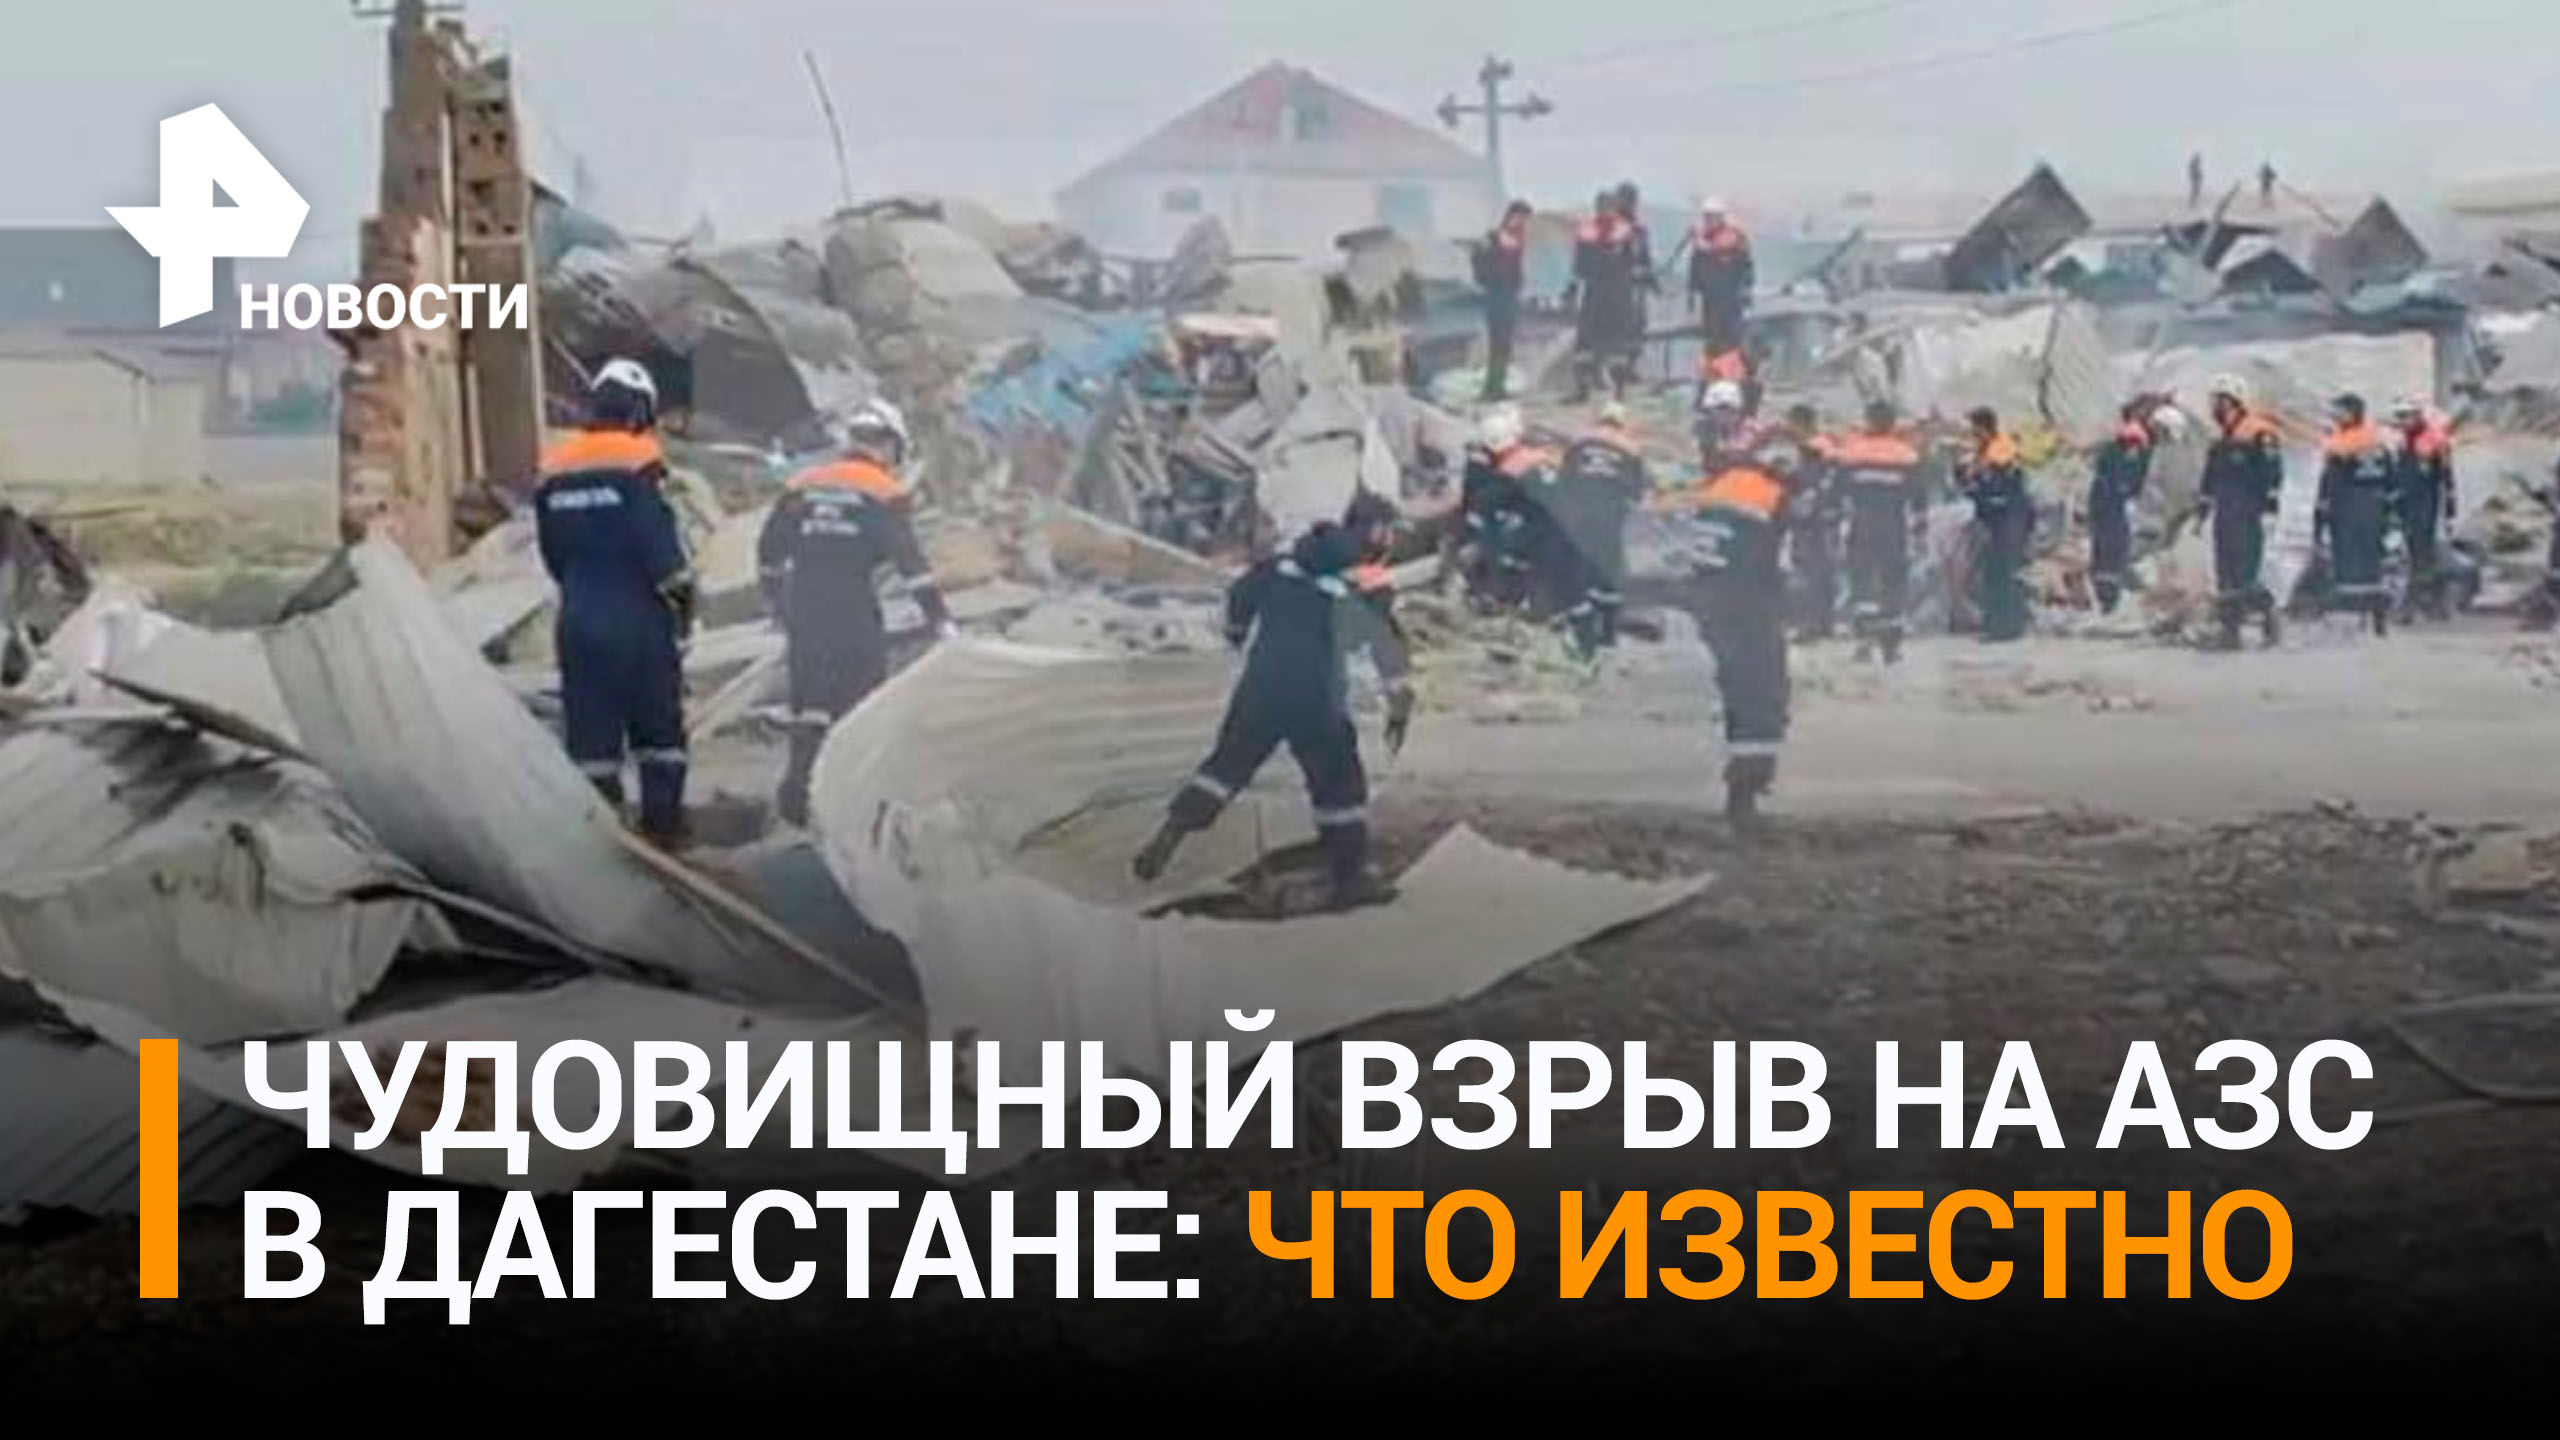 Число погибших при взрыве на АЗС в Дагестане выросло до 35 человек / РЕН Новости